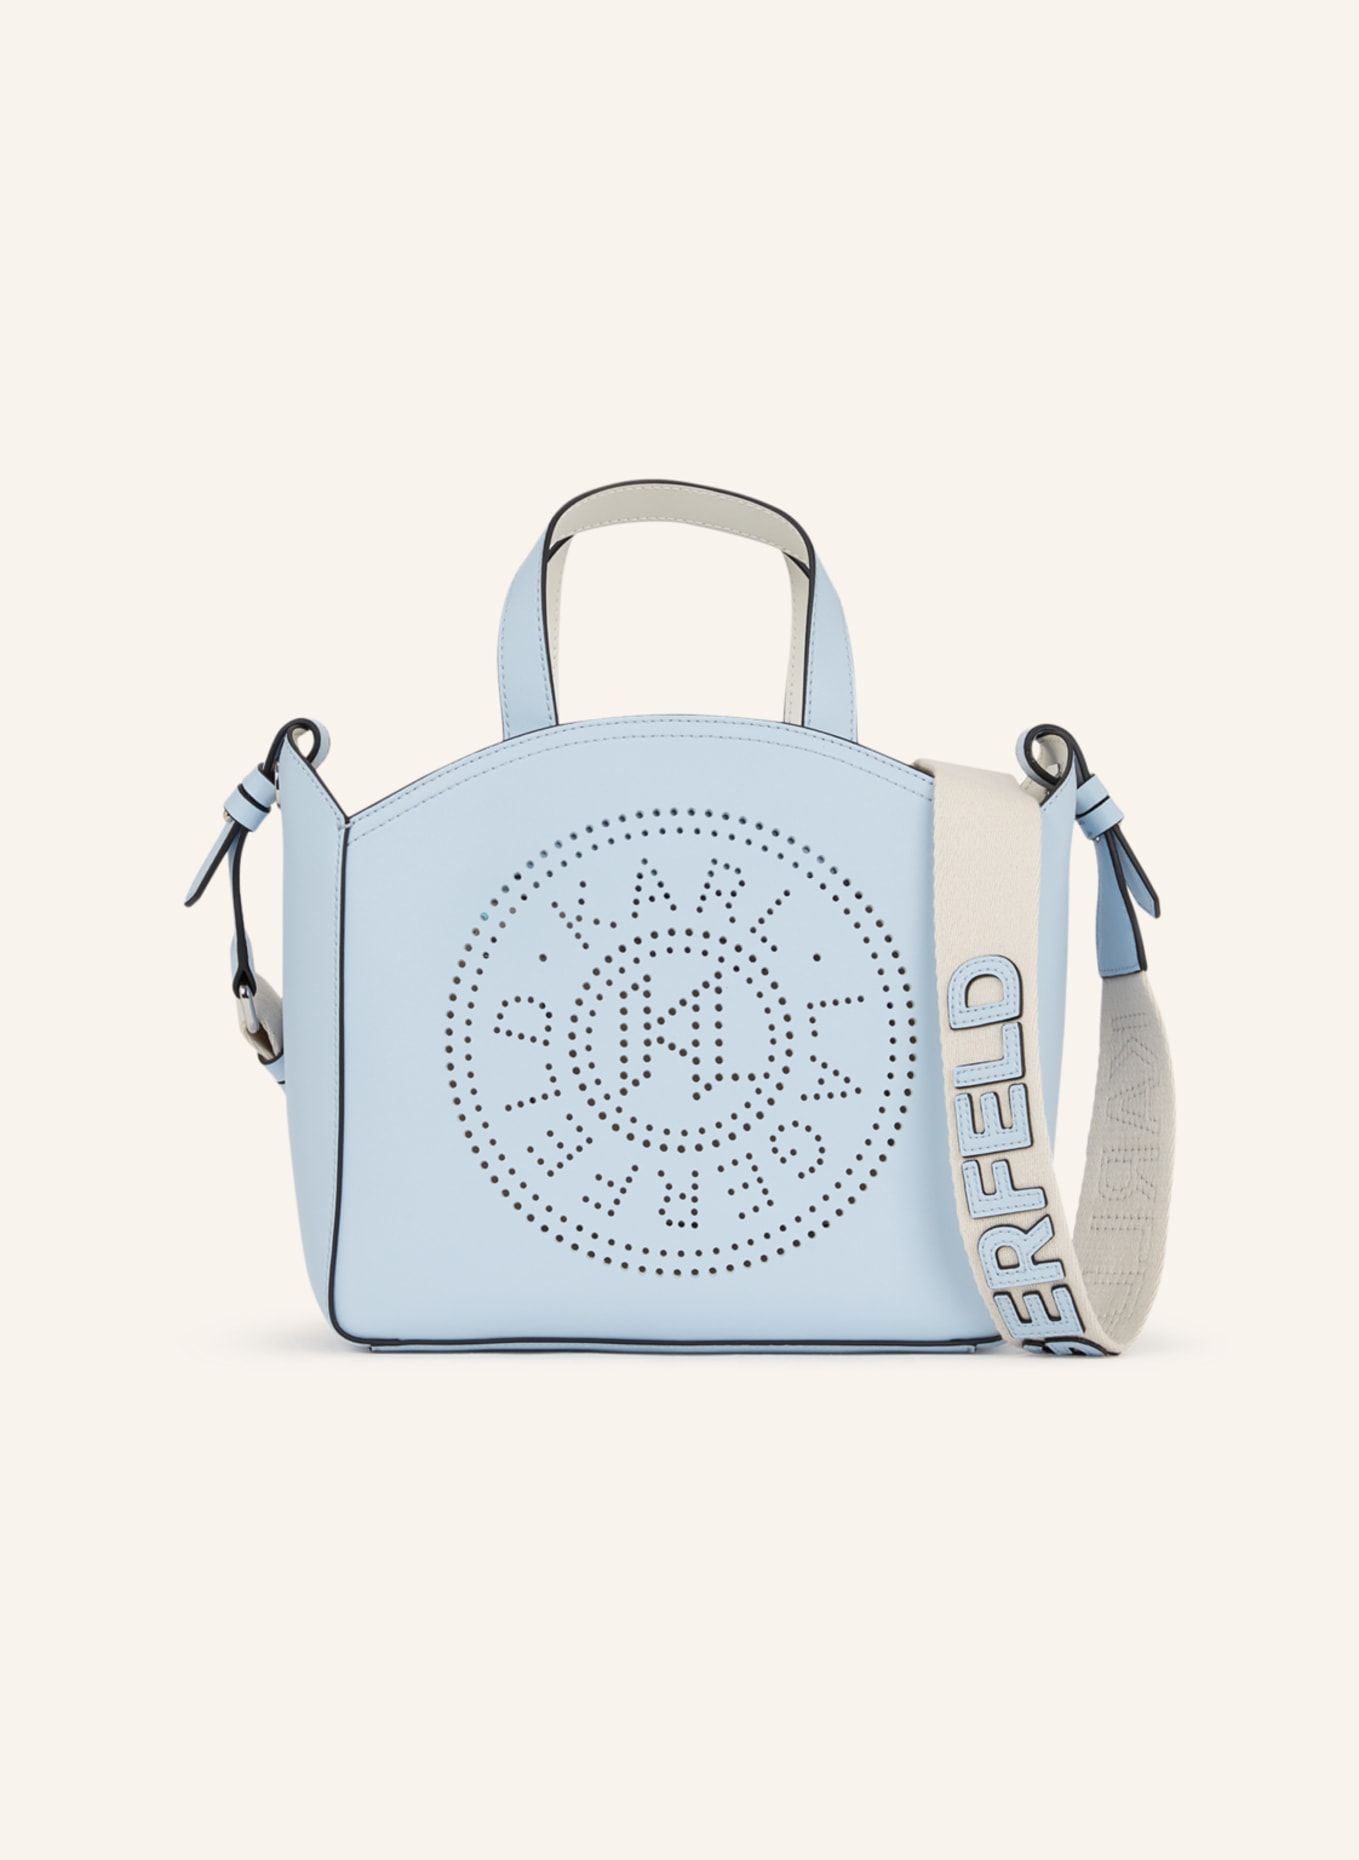 KARL LAGERFELD Handtasche, Farbe: BLAU (Bild 1)